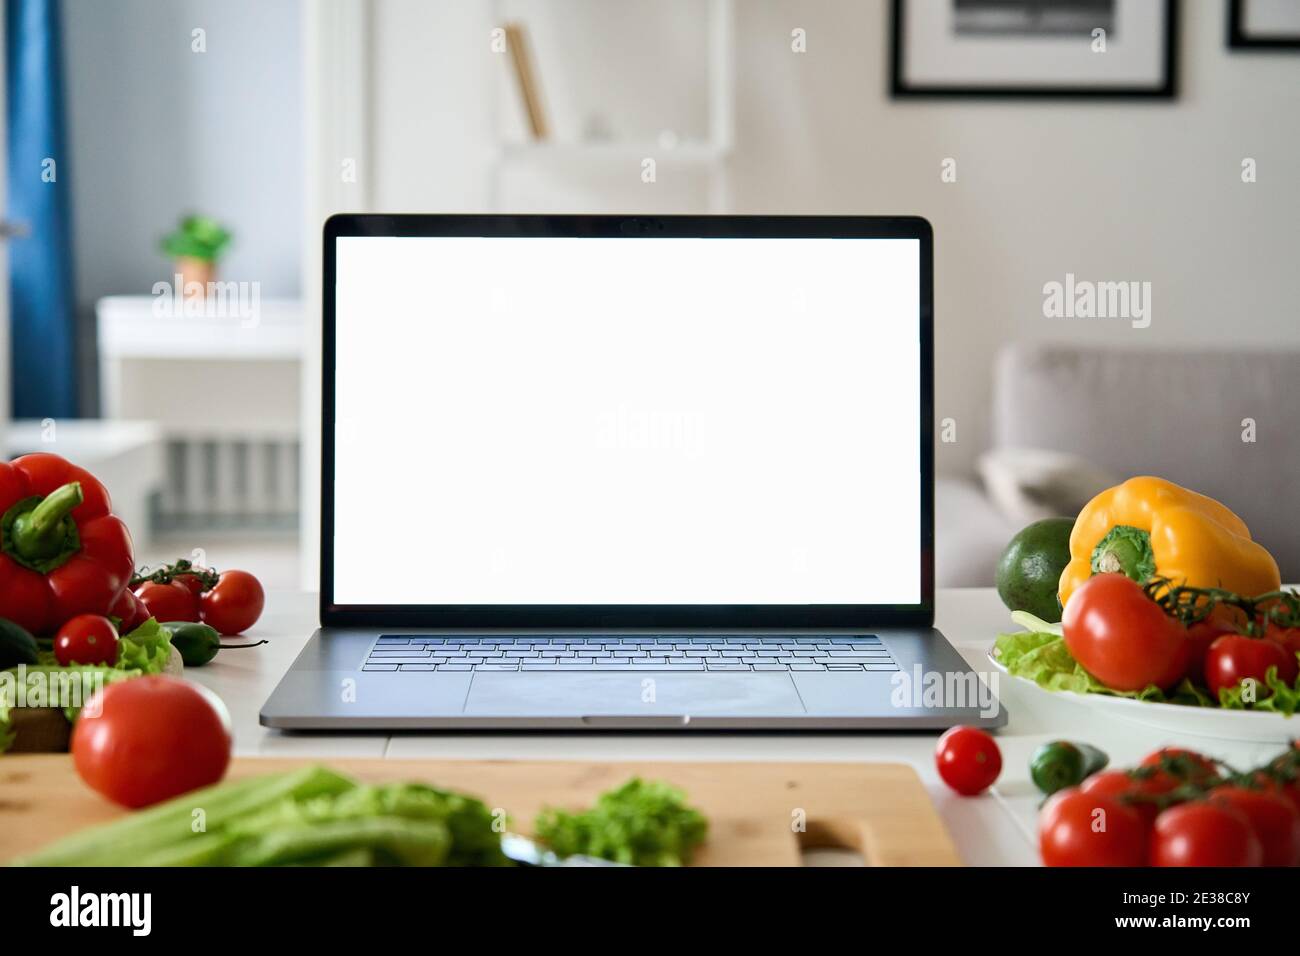 Computer portatile con schermo bianco mockup su sfondo alimentare vegetale. Foto Stock